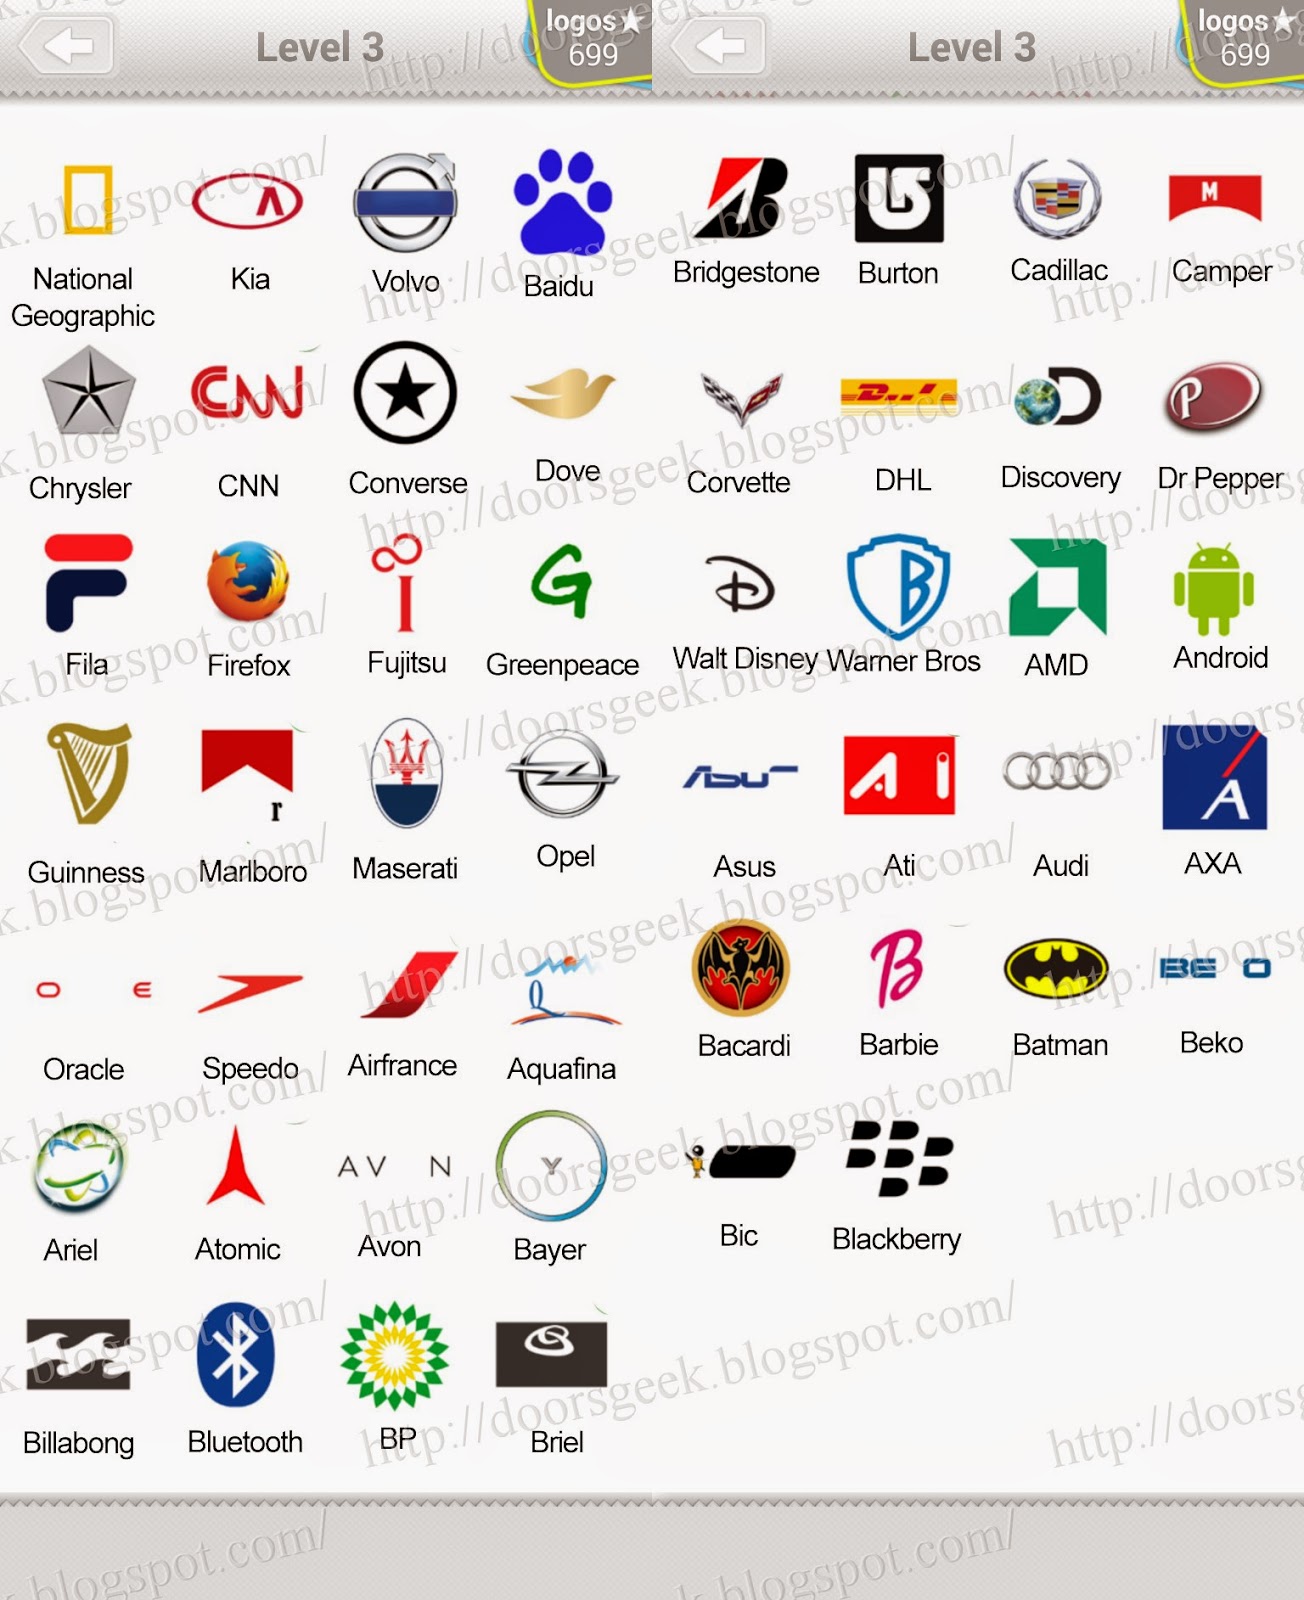 picture quiz logos level 3